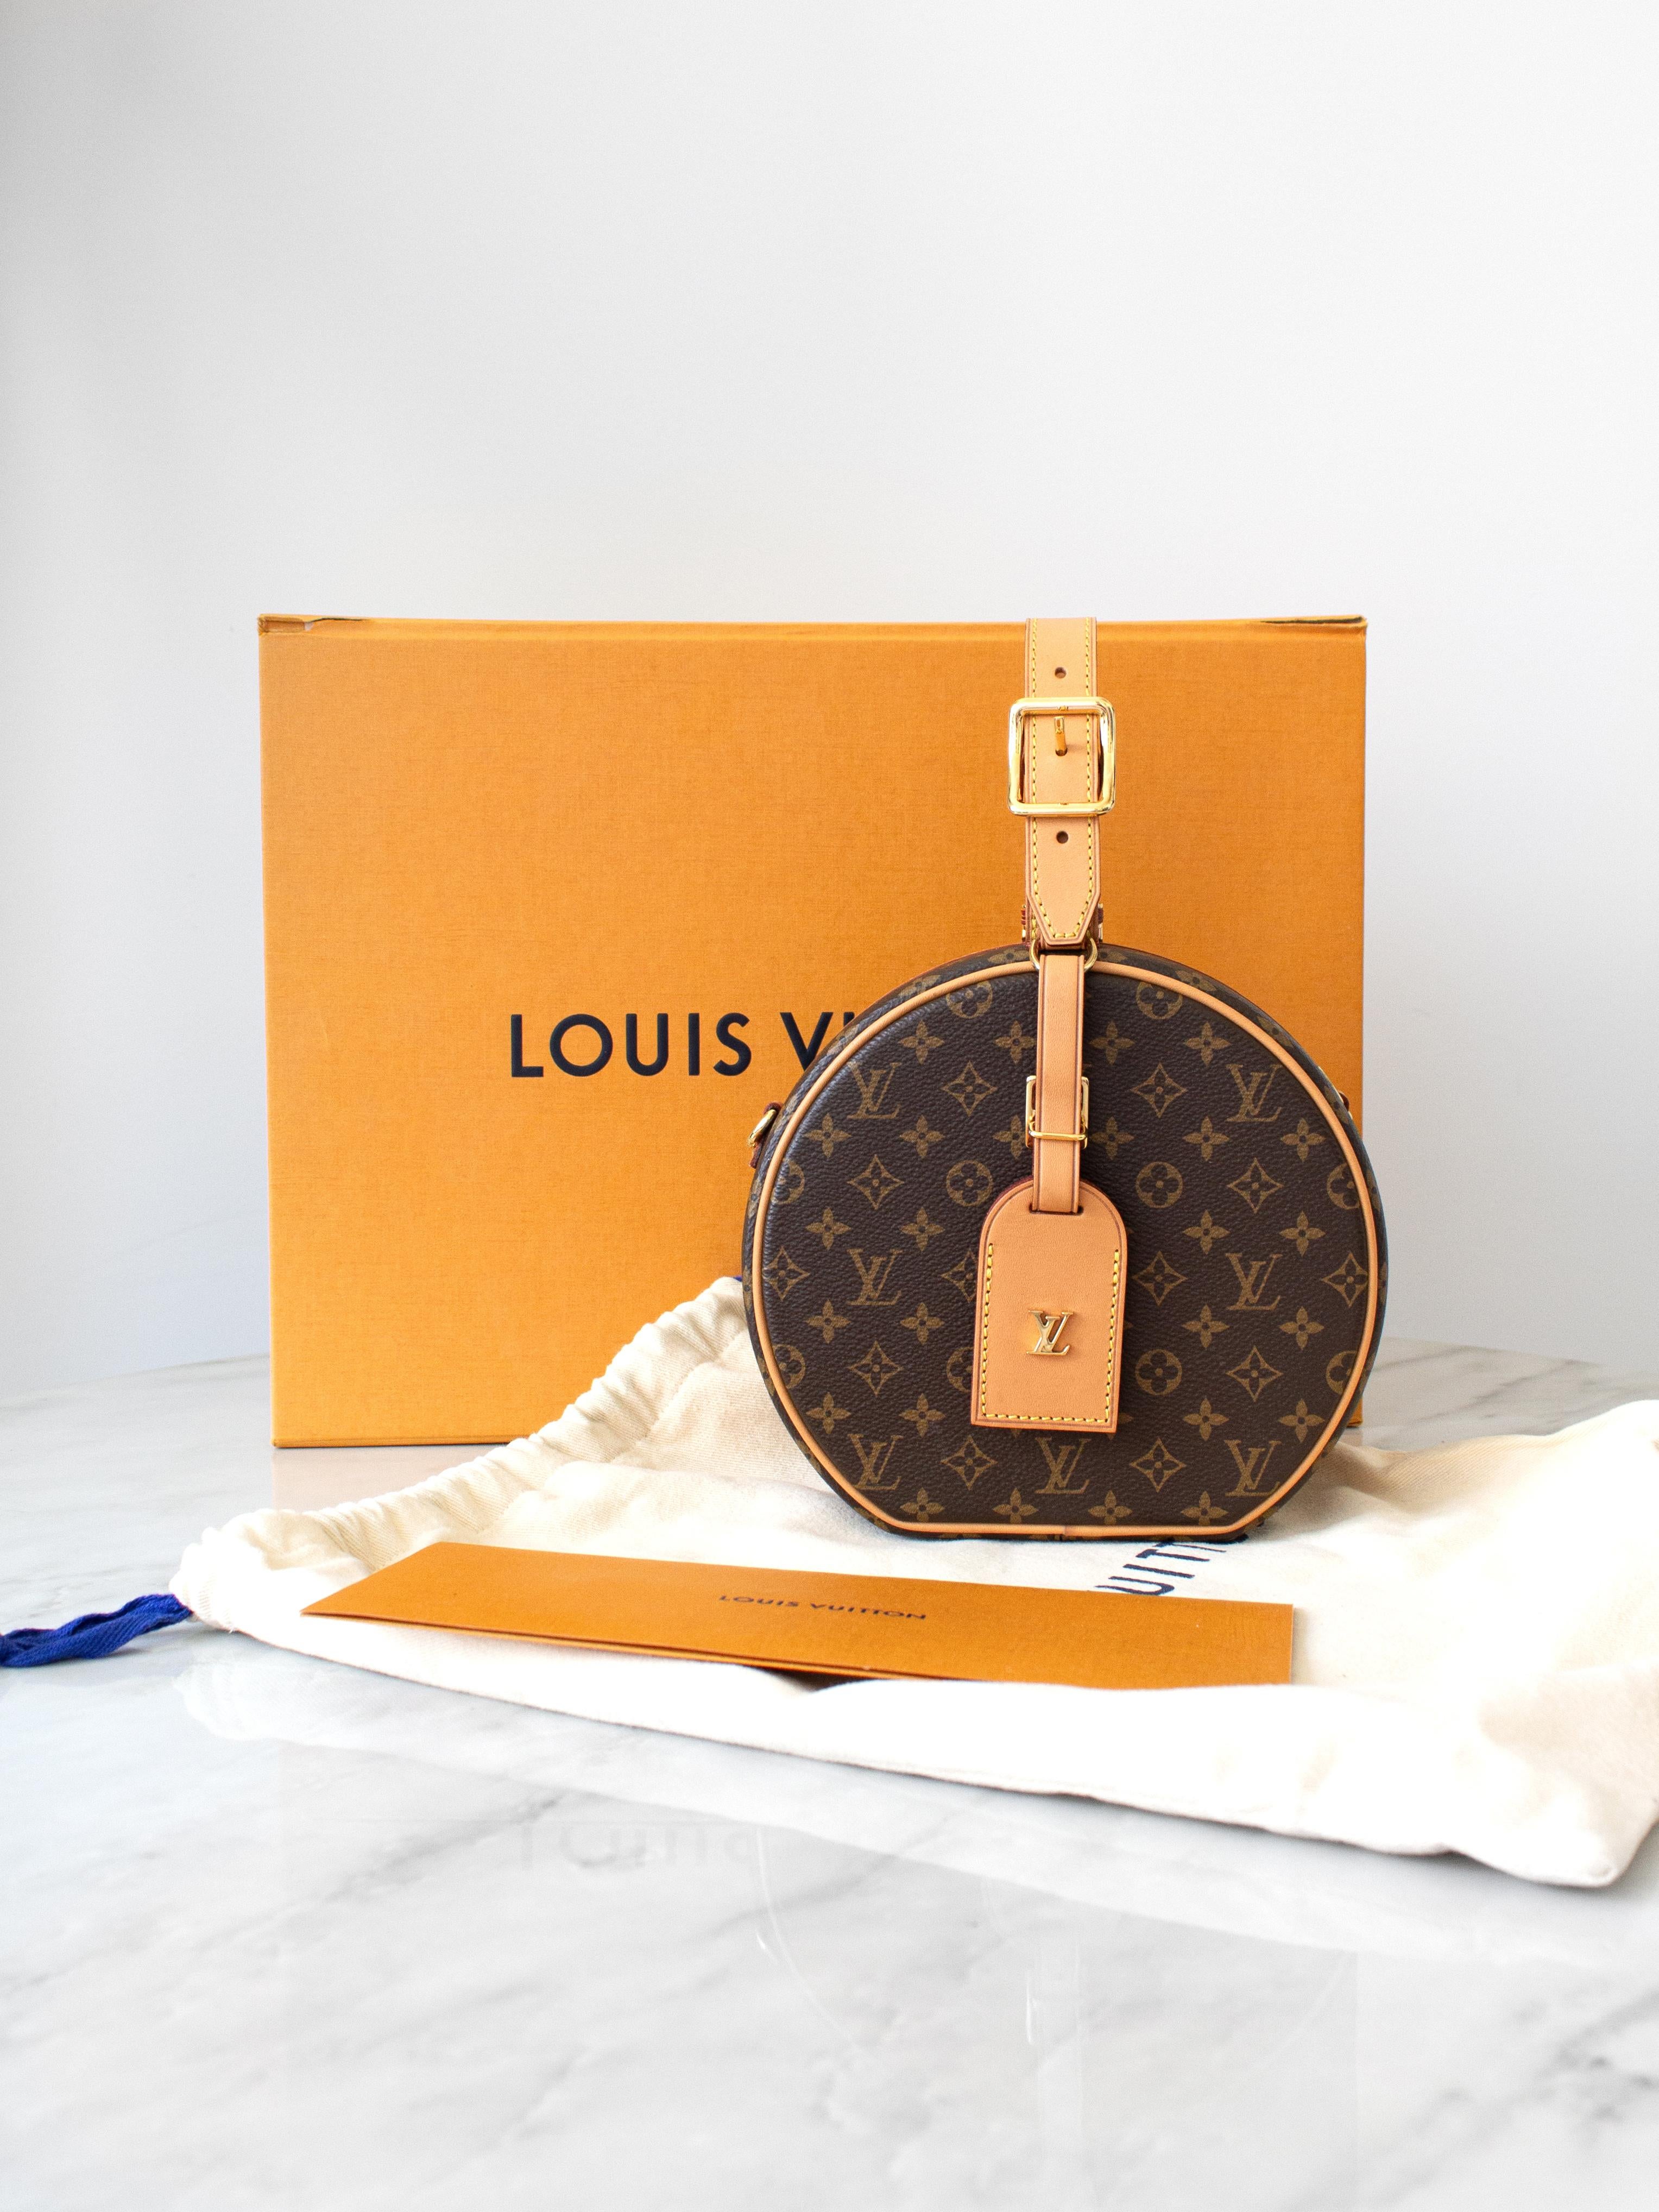 Wir präsentieren die Louis Vuitton Petite Boîte Chapeau: eine charmante Tasche, die von der klassischen Hutschachtel inspiriert ist. Diese seltene Erstausgabe aus dem Jahr 2018 besticht durch ihr zierliches und dennoch praktisches Design aus